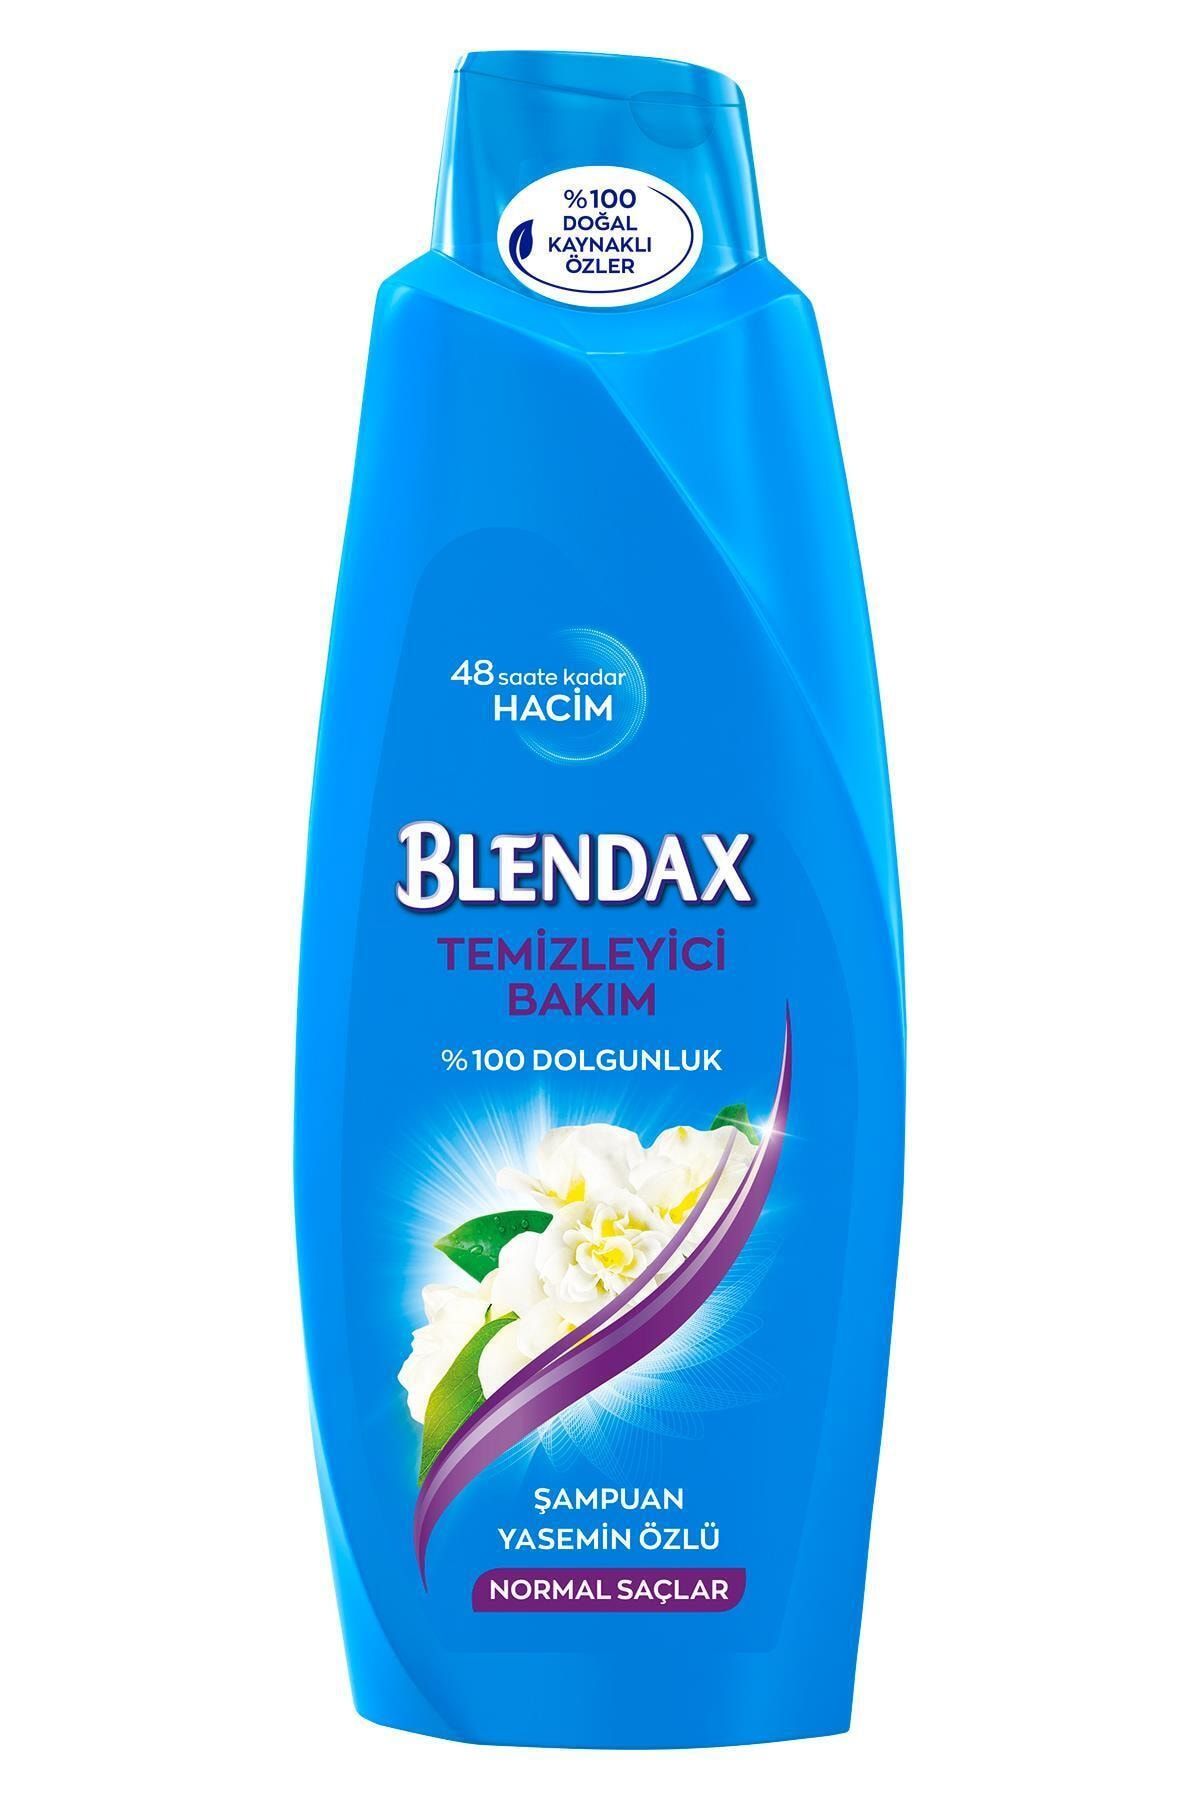 Blendax Yasemin Özlü Şampuan 550 ml